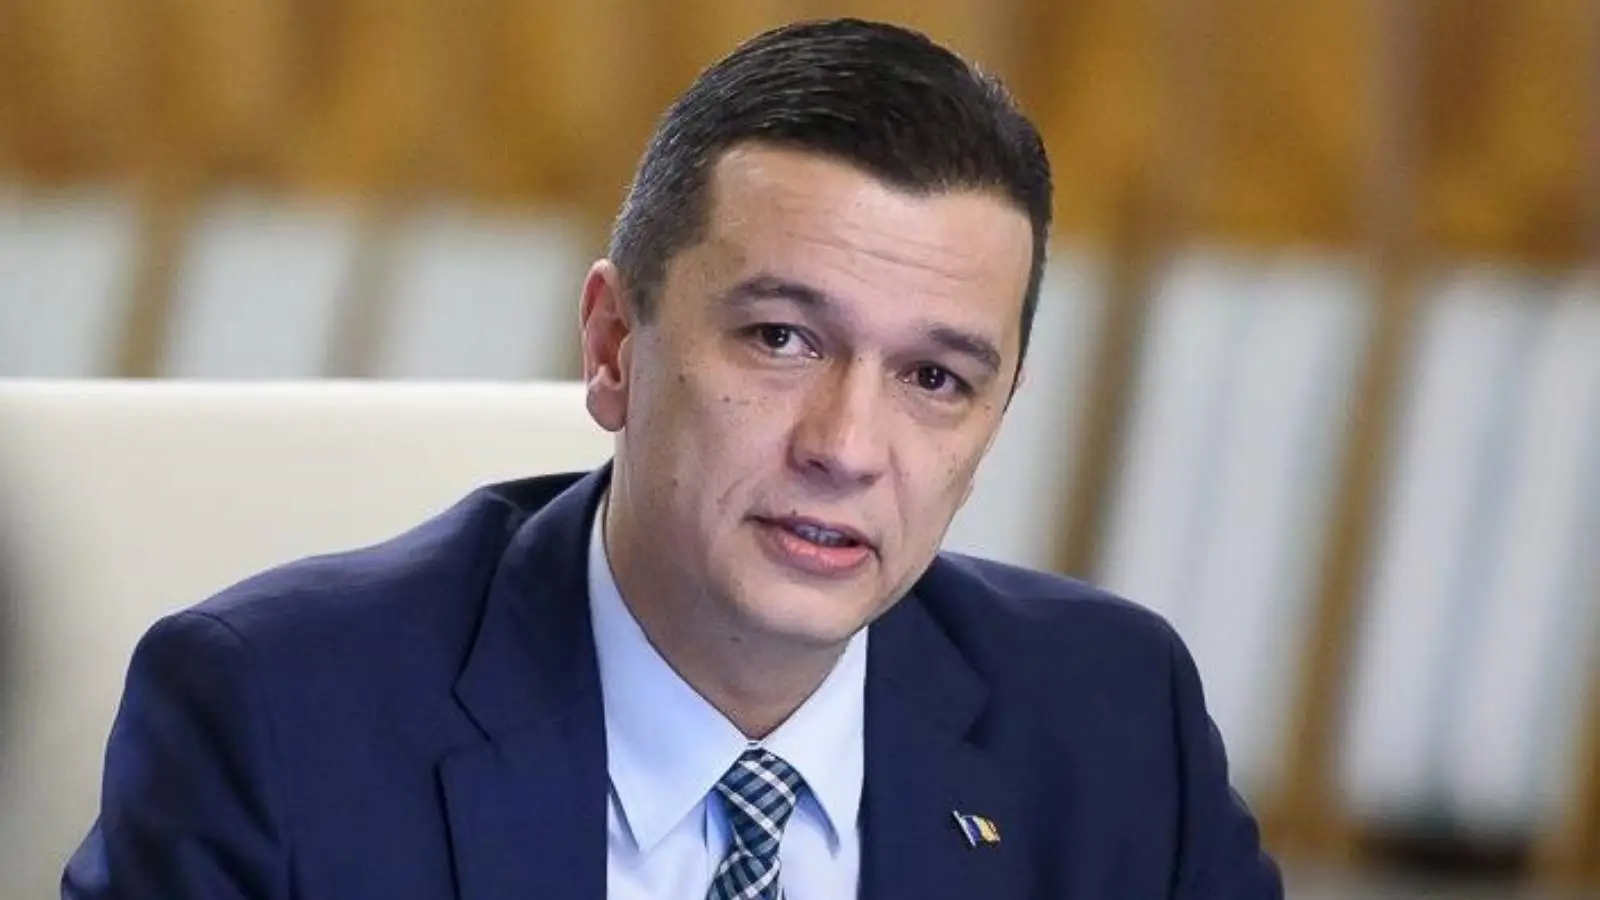 Sorin Grindeanu Oficjalny komunikat Nowe odcinki autostrady A7 w Mołdawii